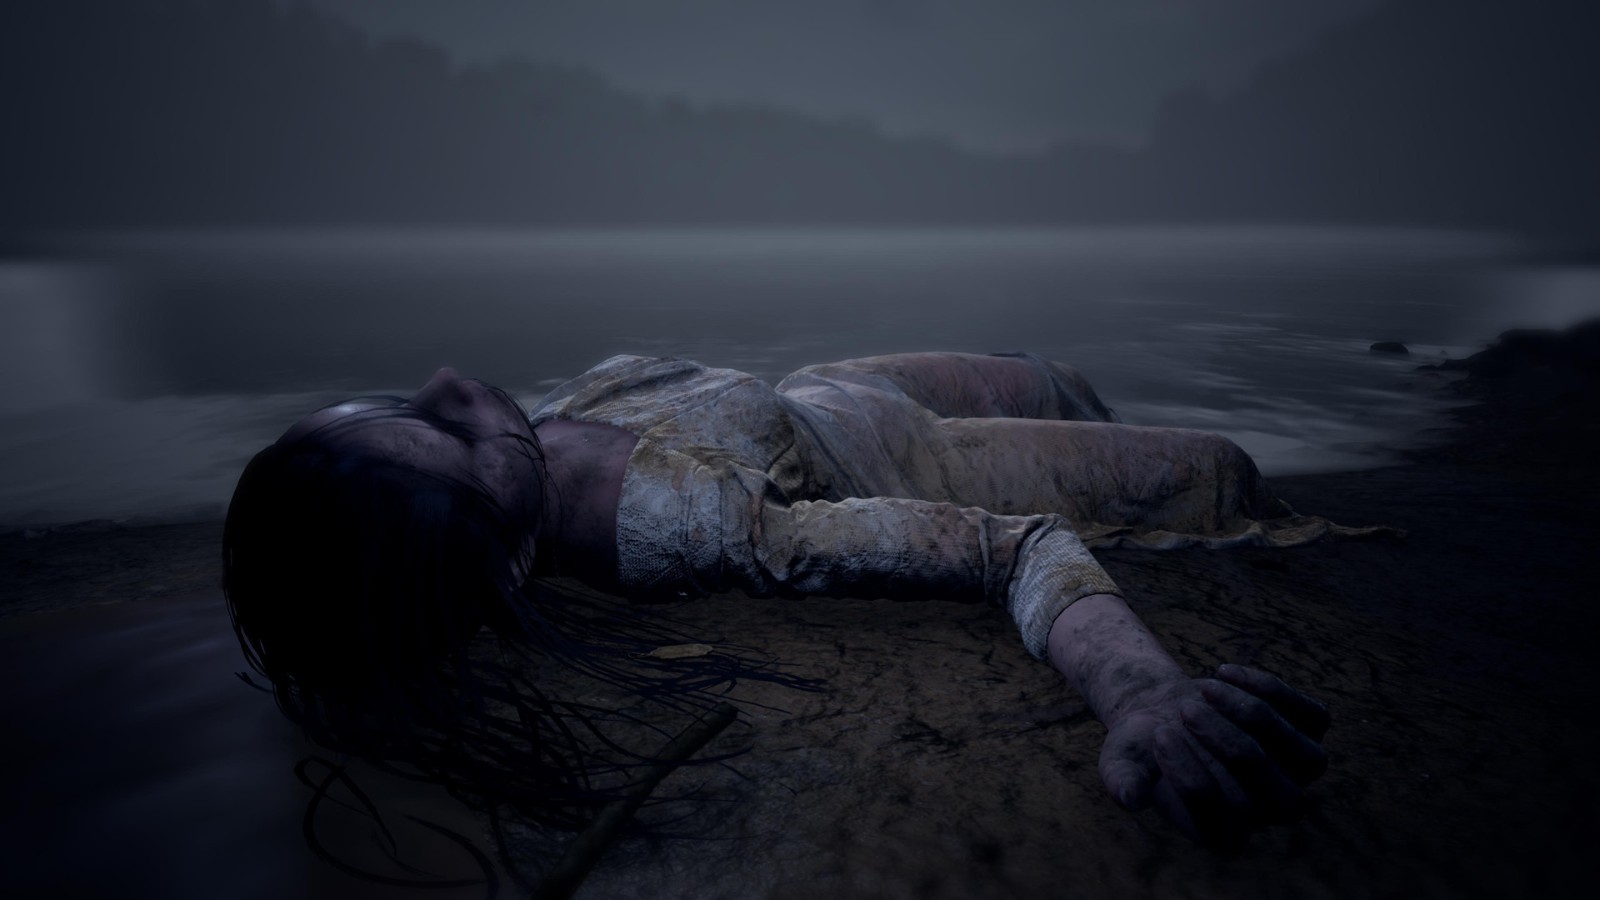 《玛莎已死》PS版本删减内容包括剥皮和性对话等内容